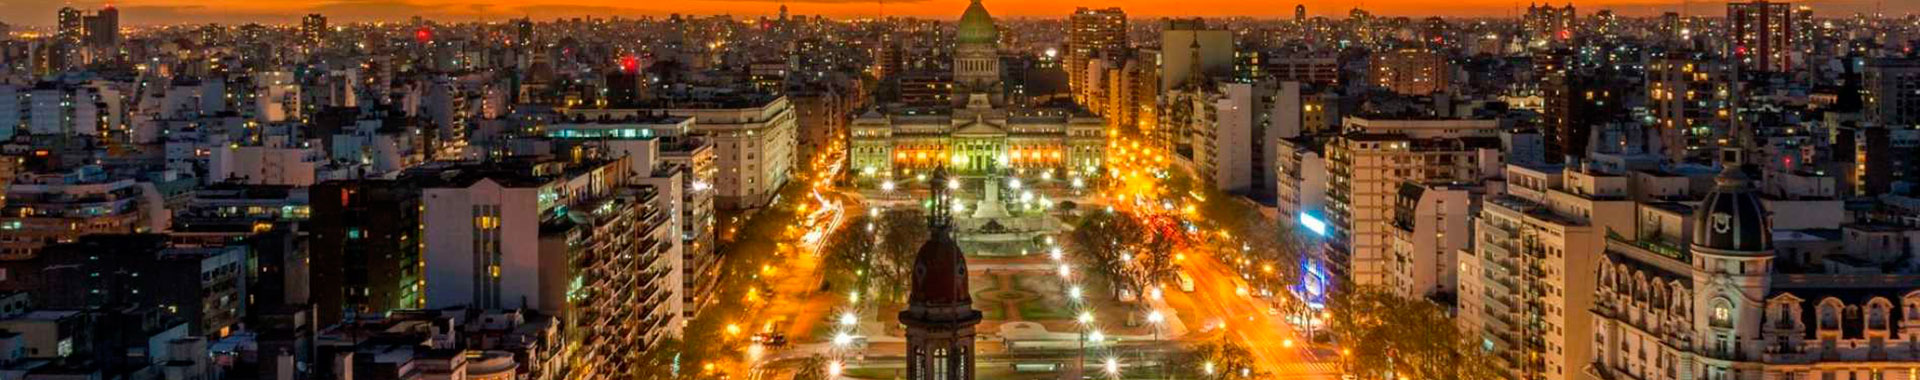 Argentina - Buenos Aires - Hoteles - Claridge